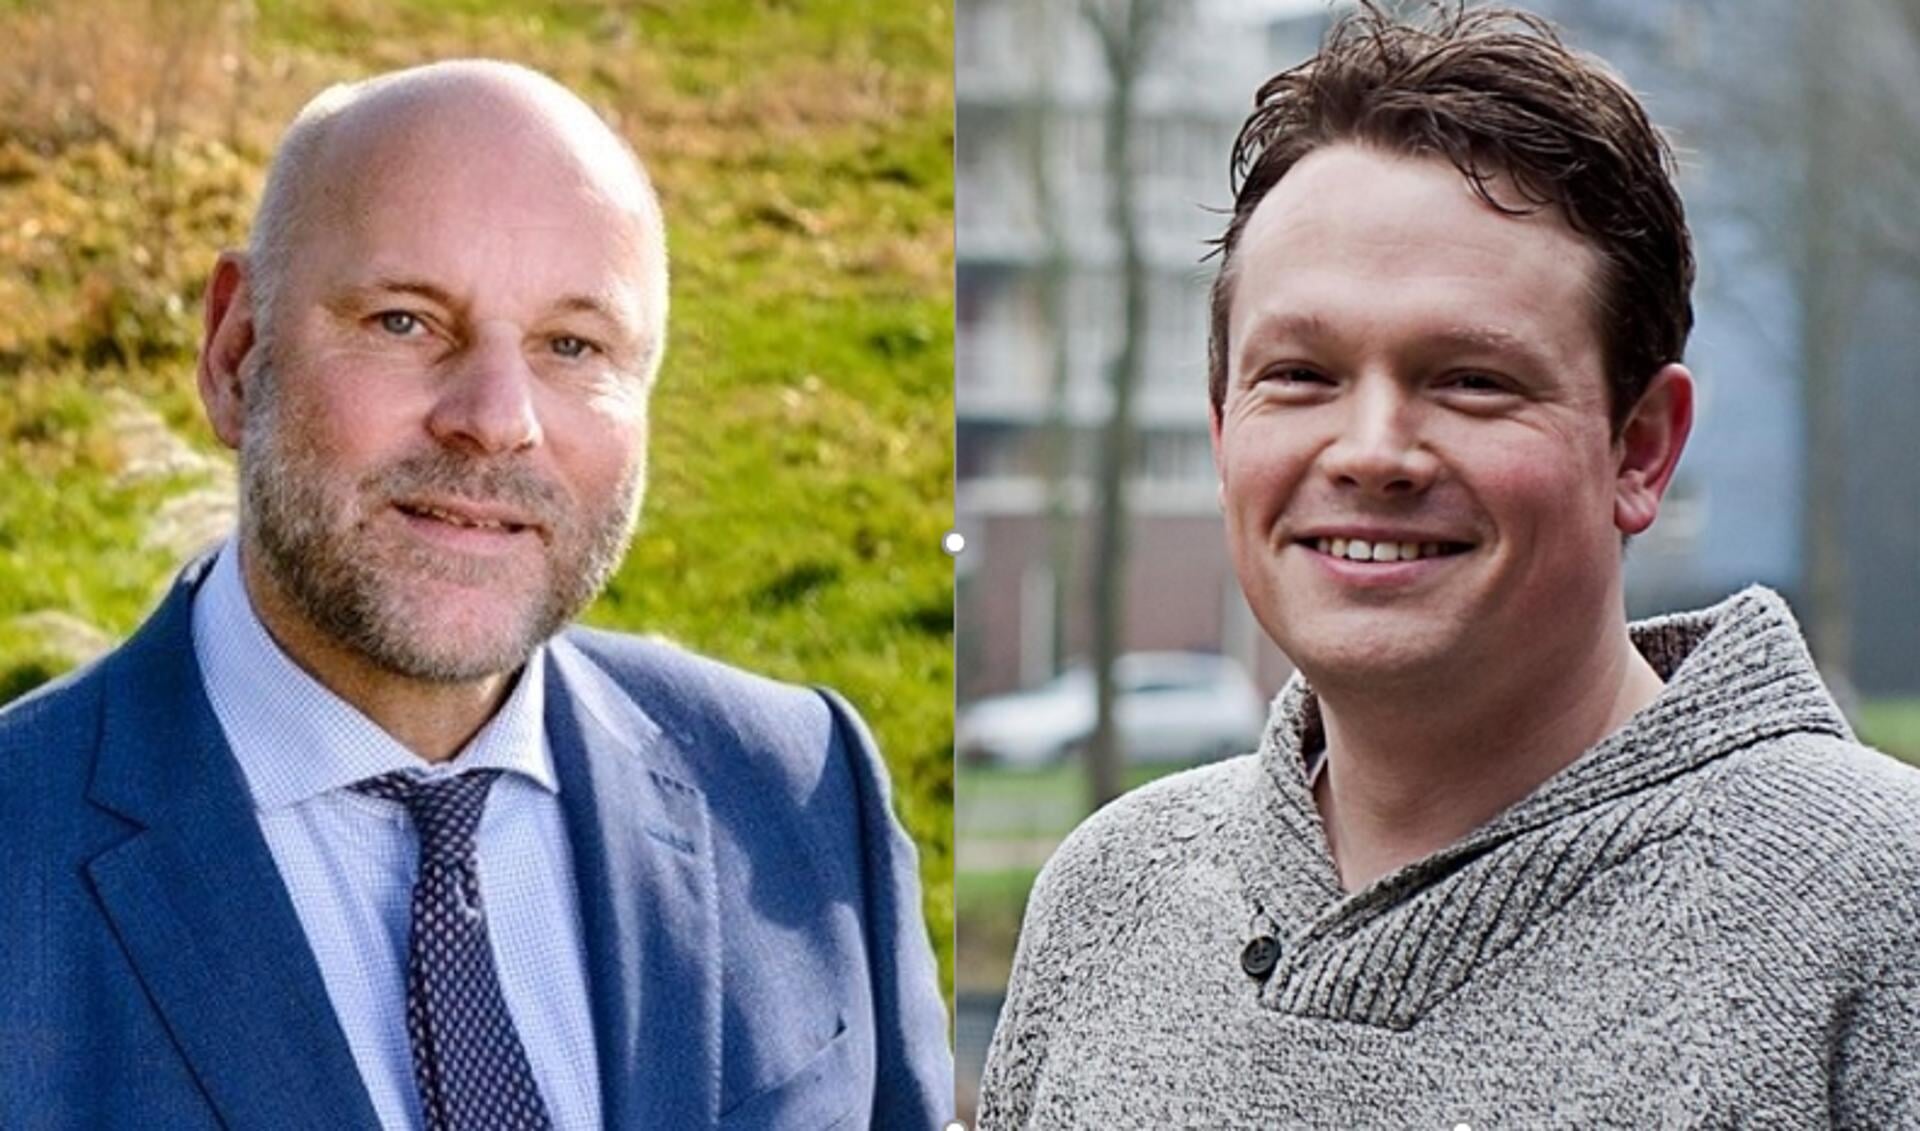 Fractievoorzitters Olaf McDaniel (PvdA, foto links) en Bob Vastenhoud (GroenLinks) zijn verheugd over de samenwerking. 